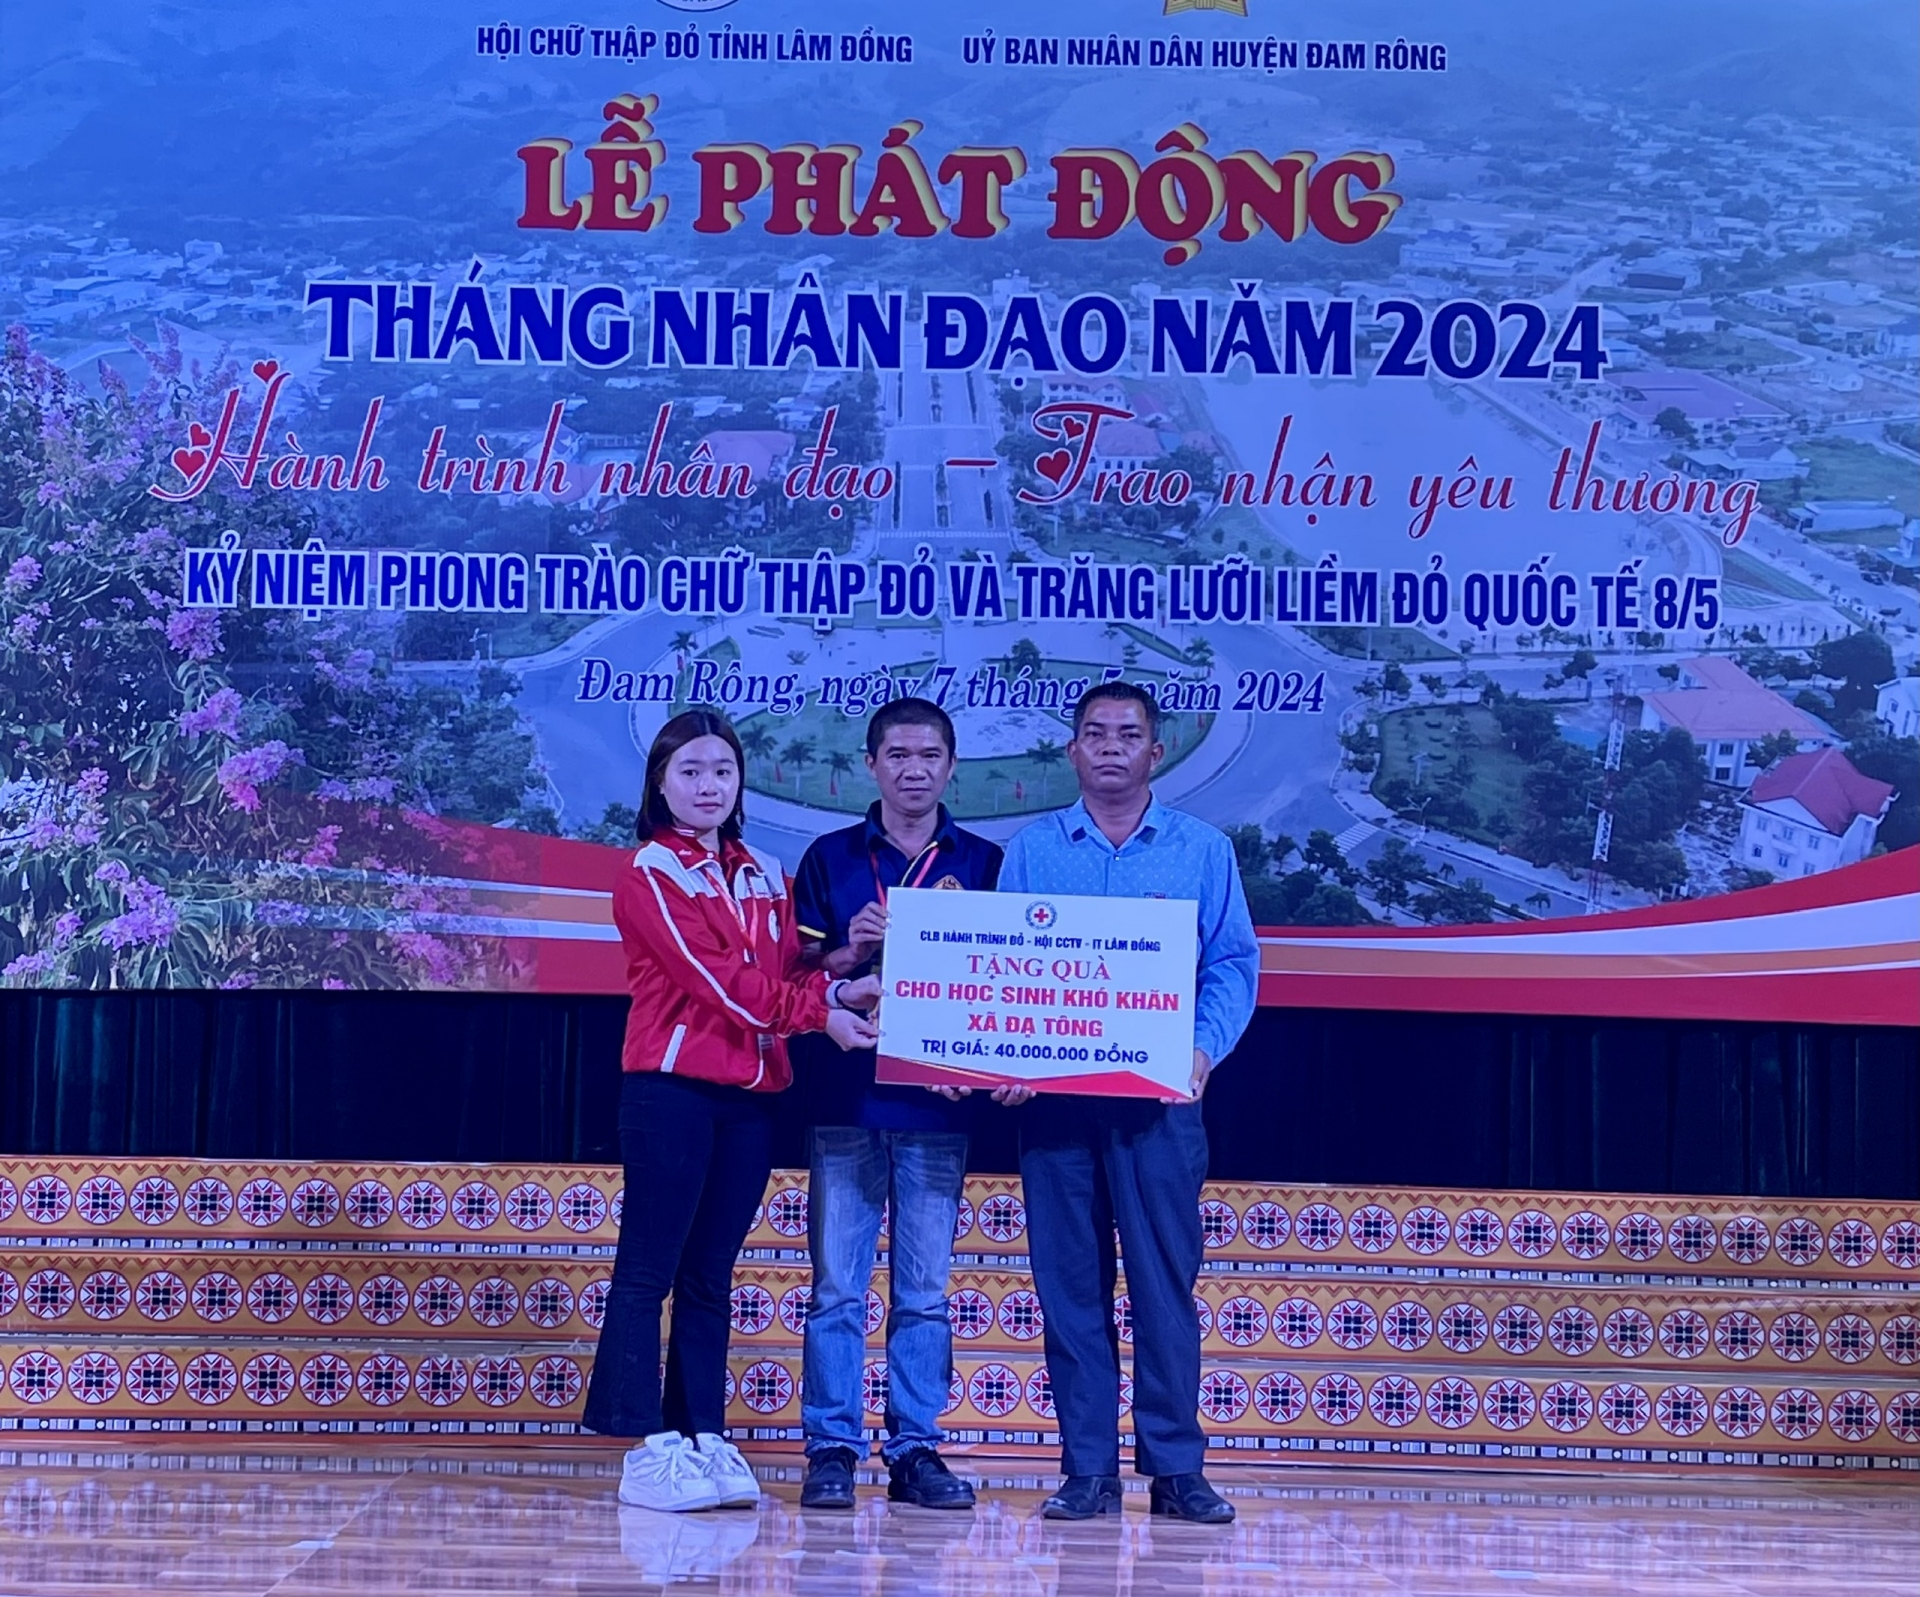 CLB Hành trình đỏ và Hội CCTV -IT Lâm Đồng trao tặng quà cho học sinh có hoàn cảnh khó khăn xã Đạ Tông trị giá 40 triệu đồng